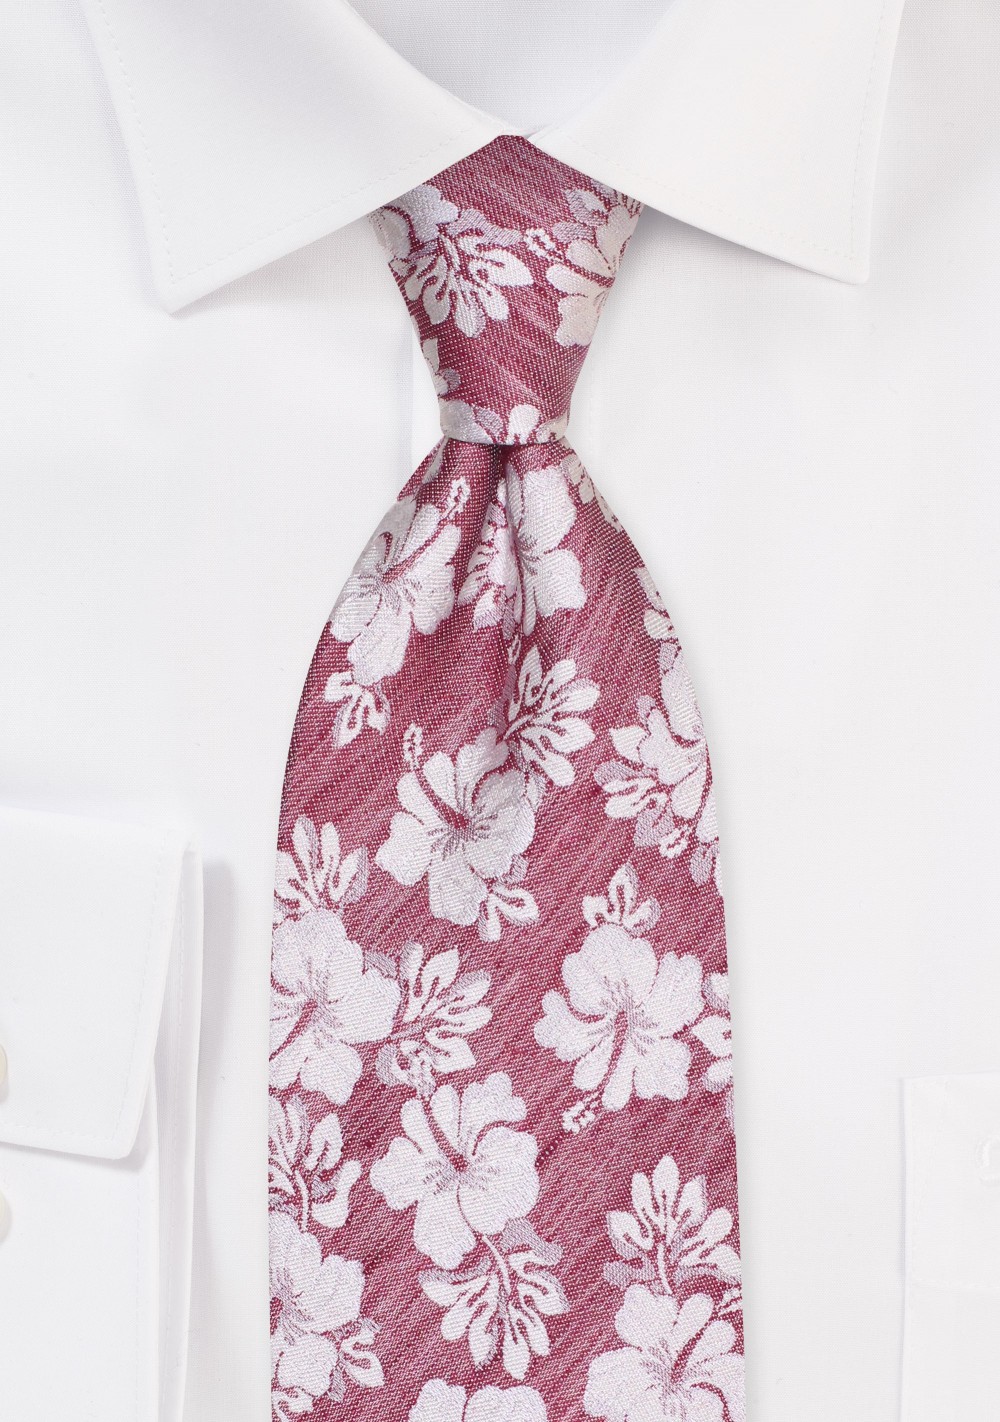 Summer Linen Tie in Red with Hibiscus Flower Design